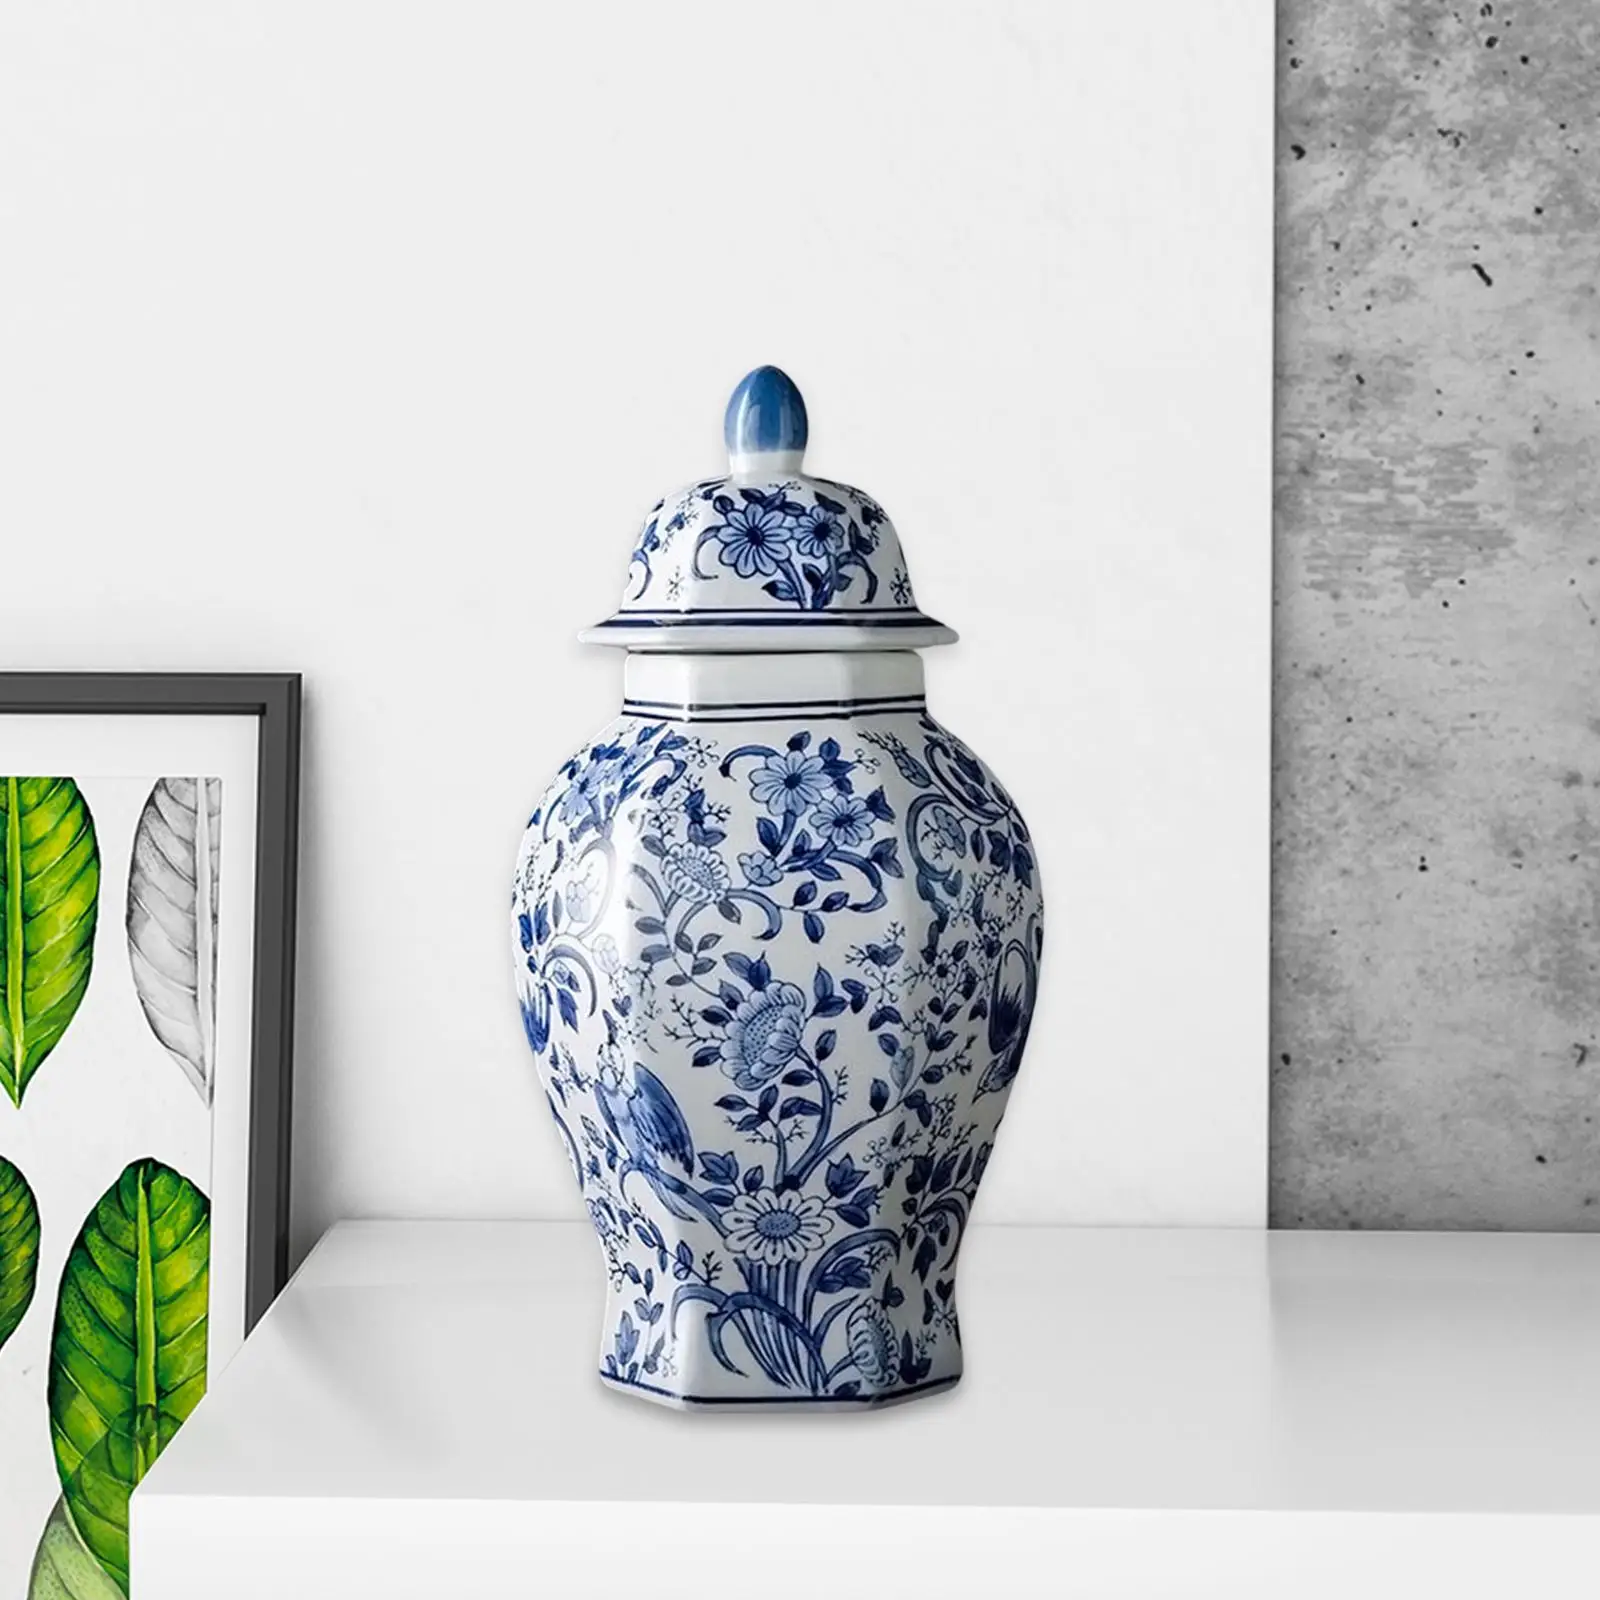 Mandarin Ceramic Ginger Jar with Lid vase Decorative for Home Wedding